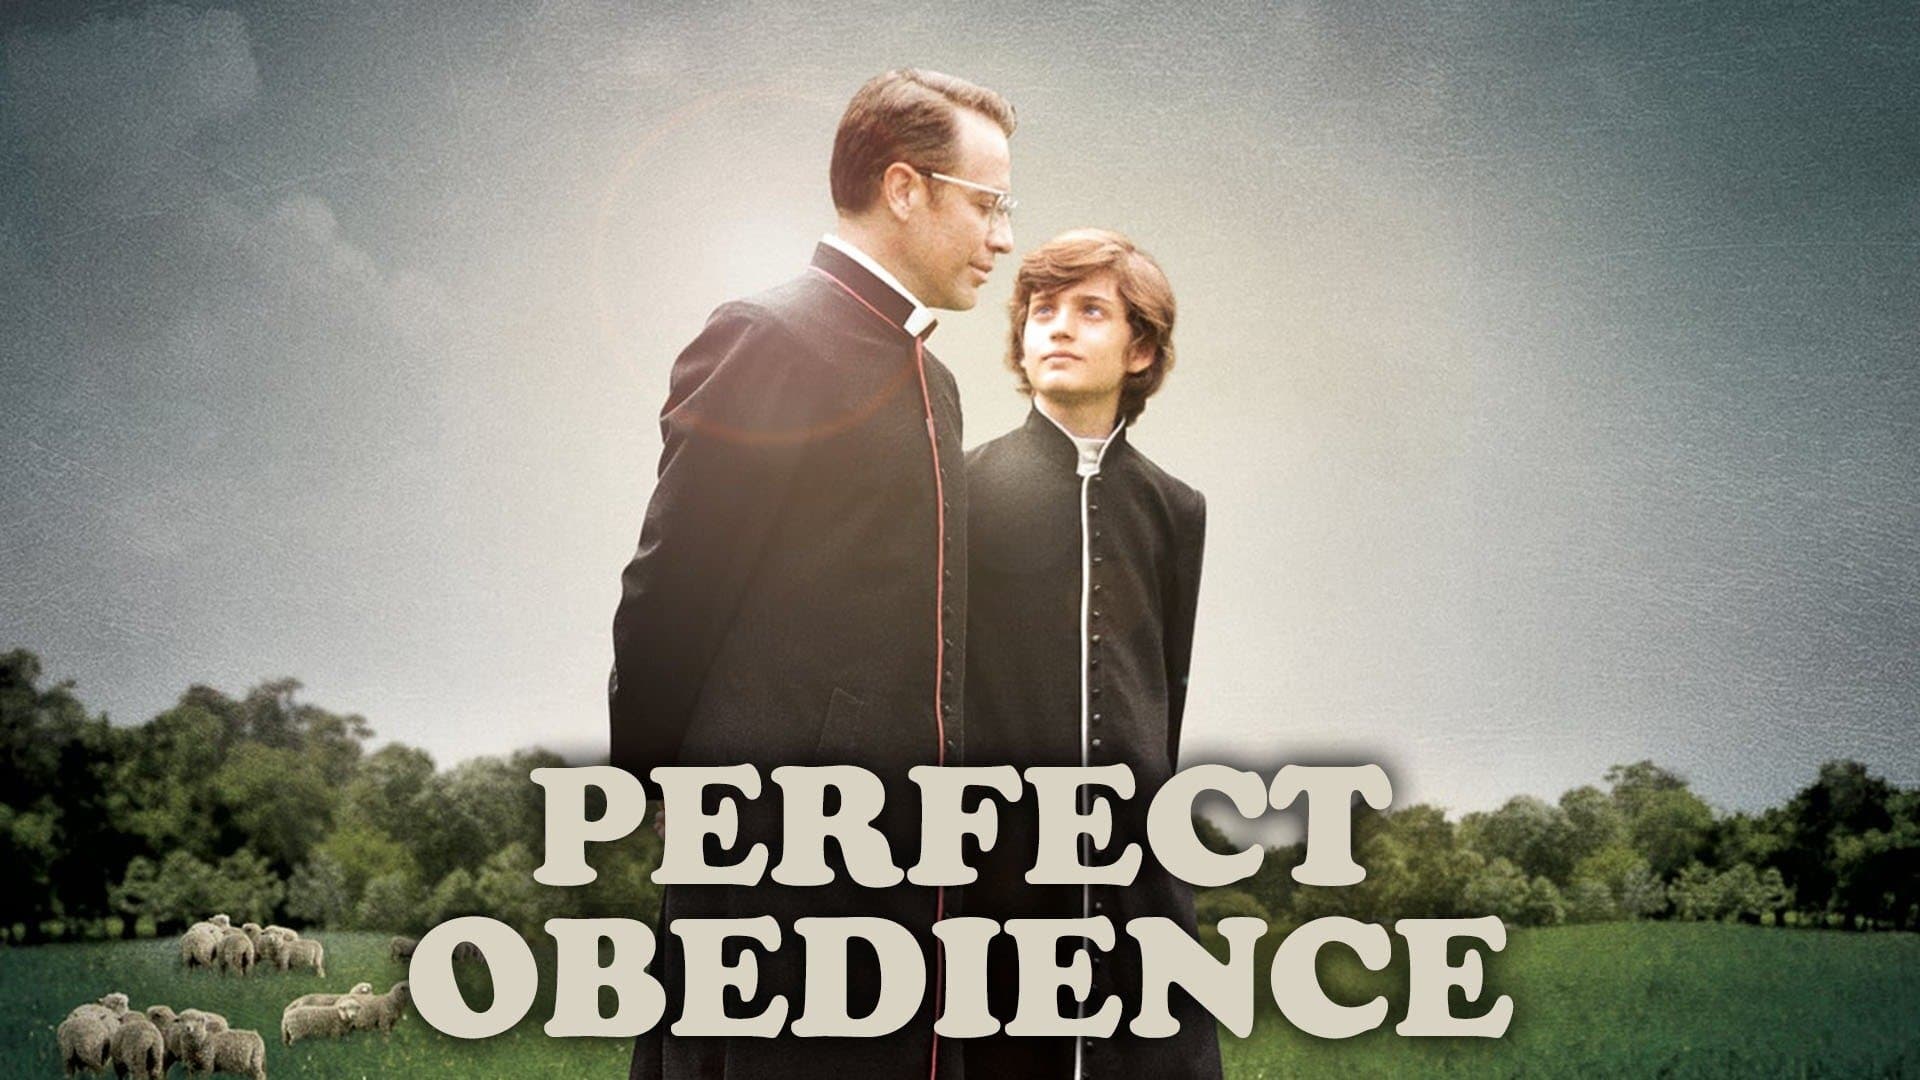 Obediencia Perfecta (2014)